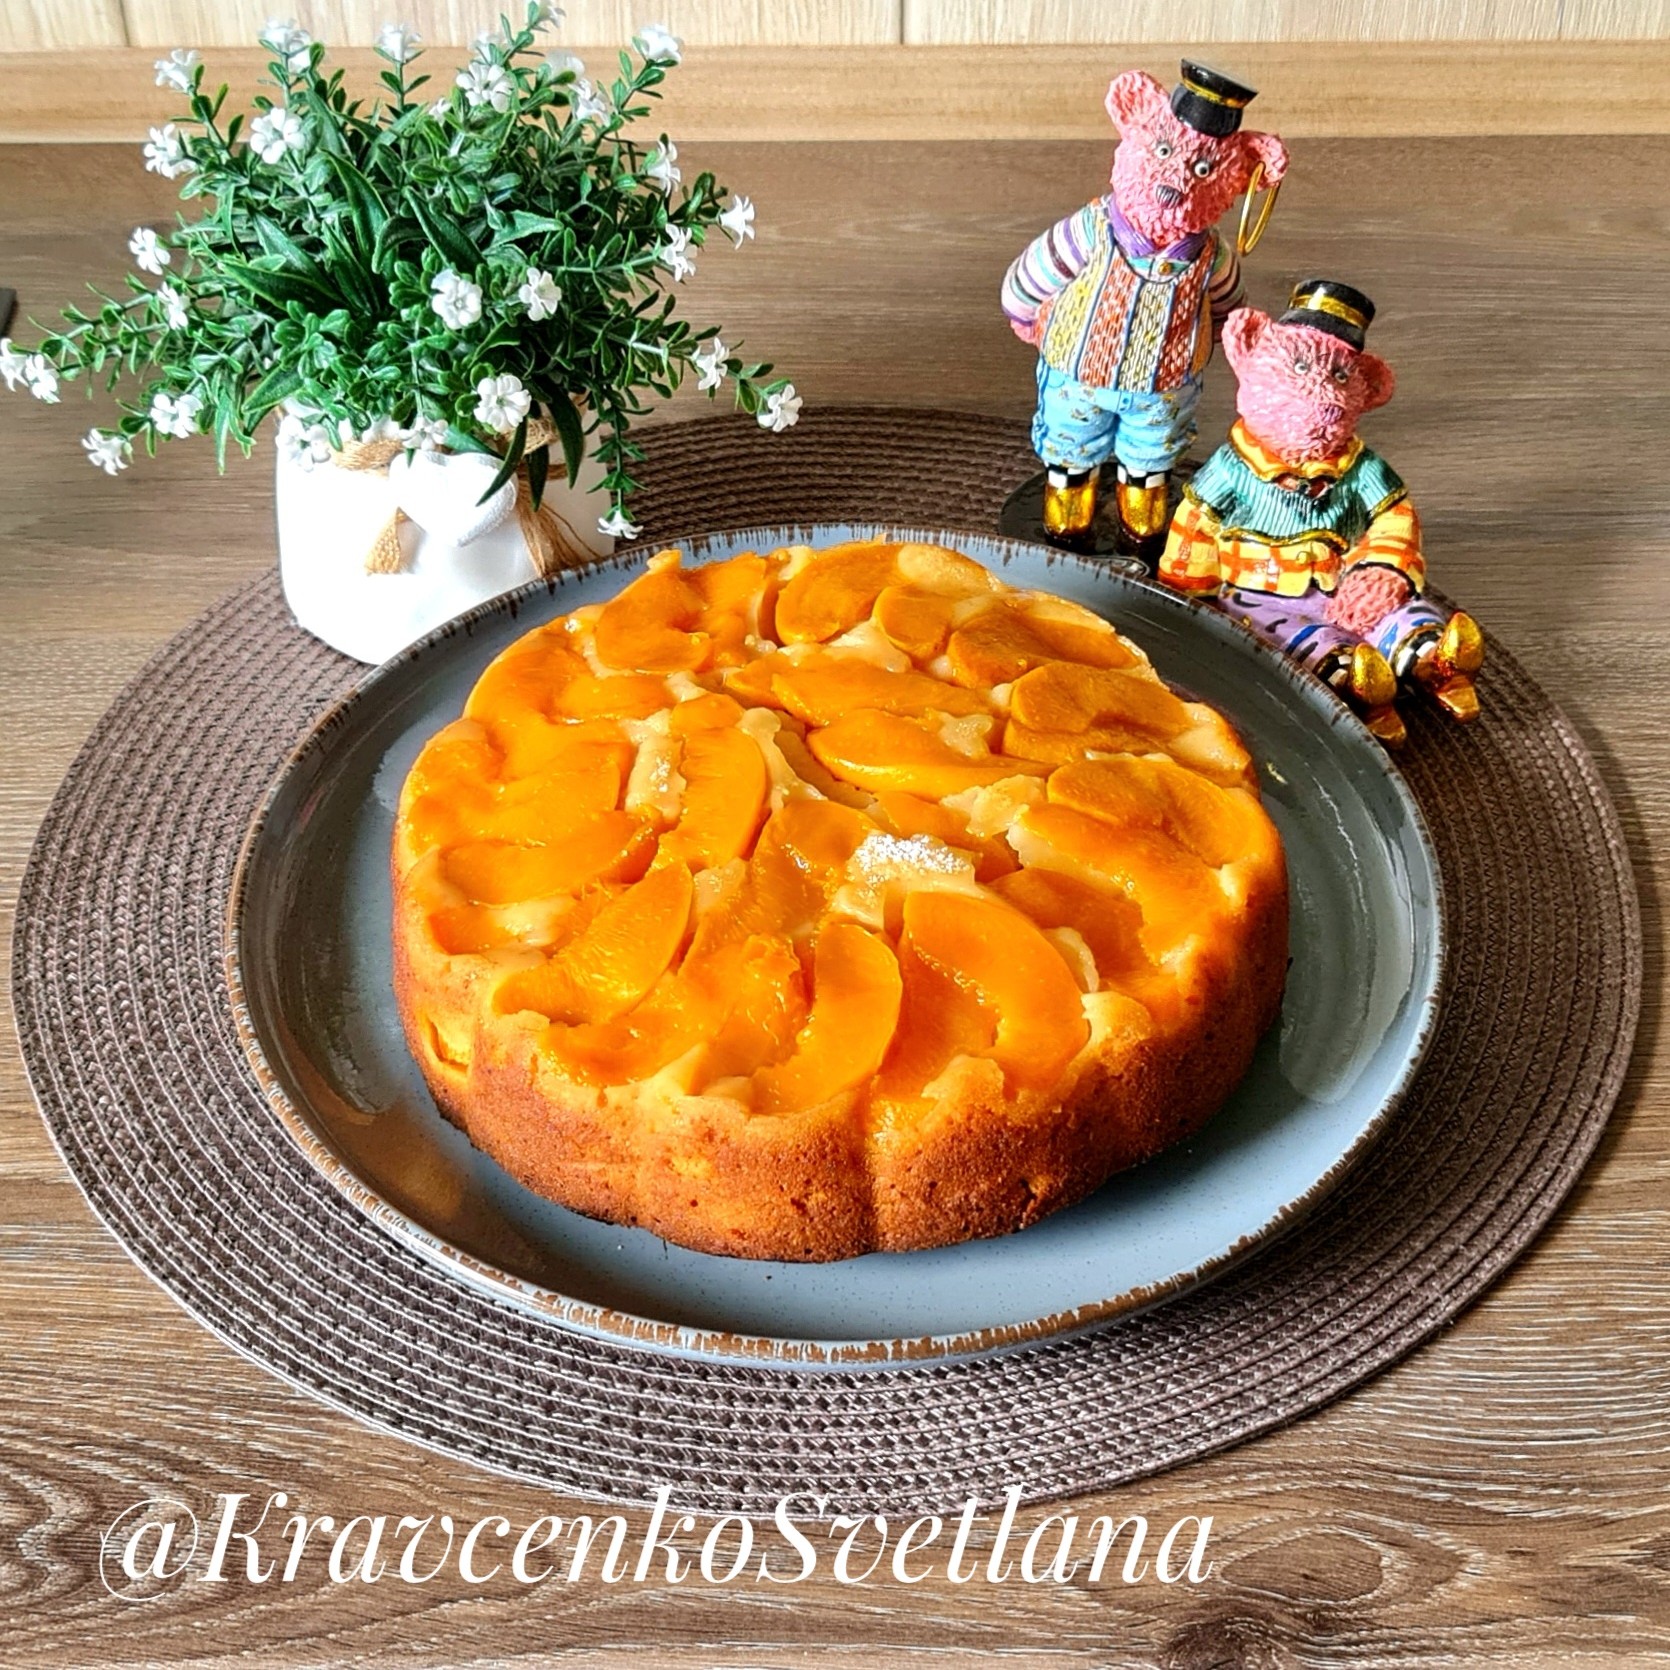 Персиковый пирог, очень вкусно и просто! Готовьте, пока сезон! |Готовим с Рустамом|